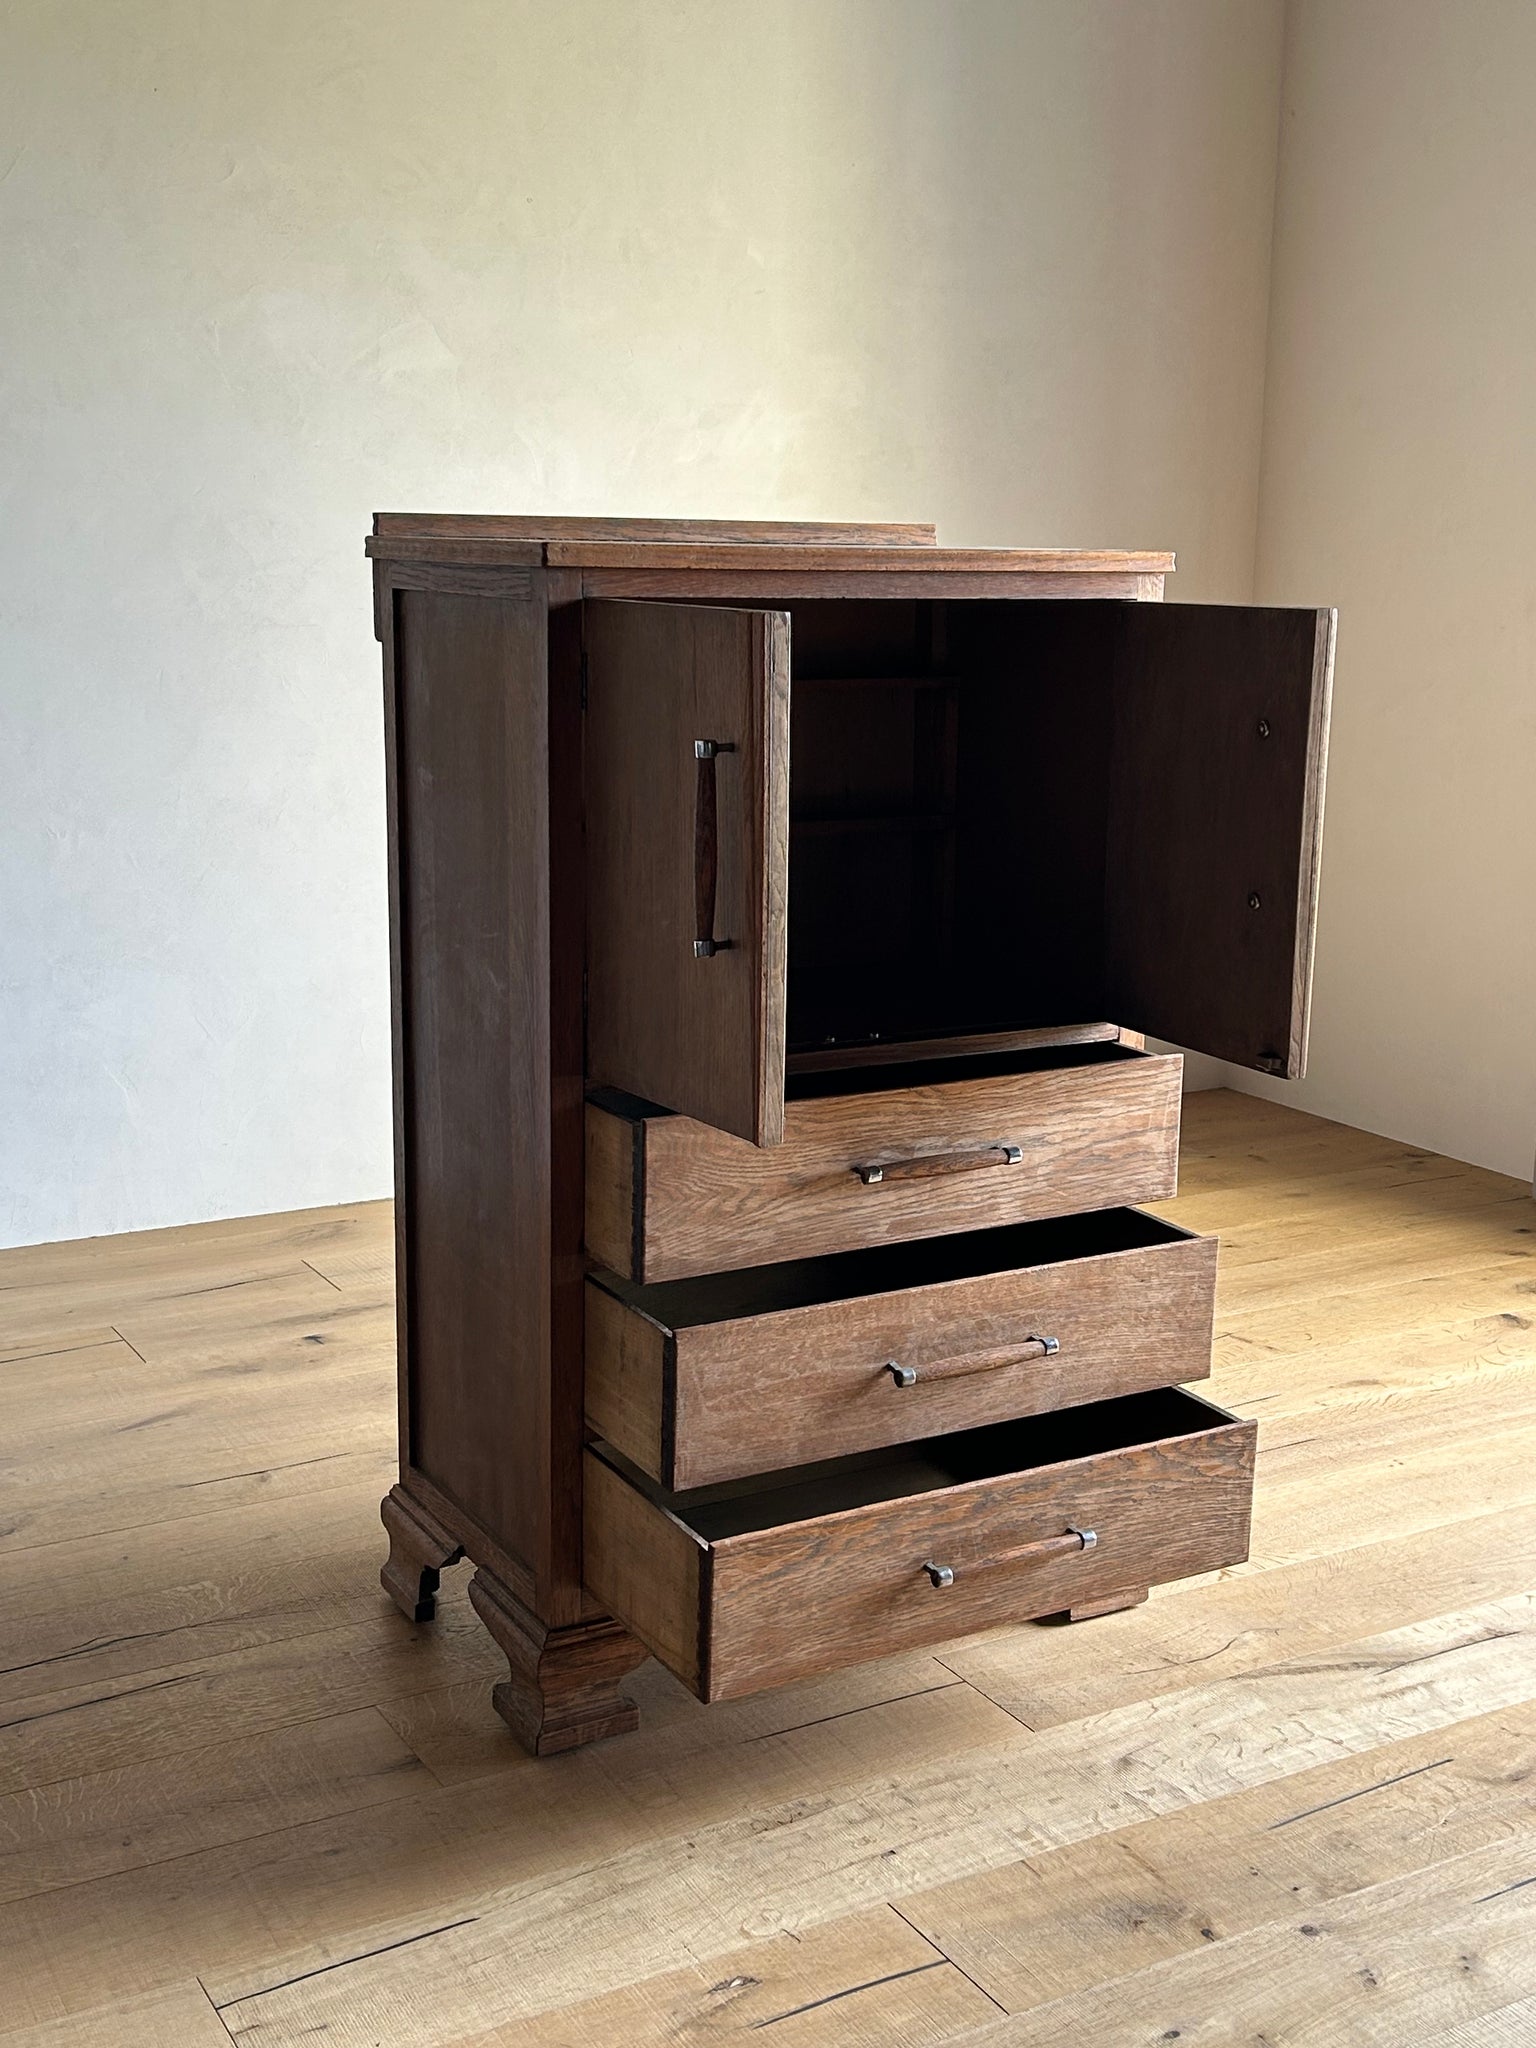 オーク スモール カップボード / oak small cupboard with drawers #0288